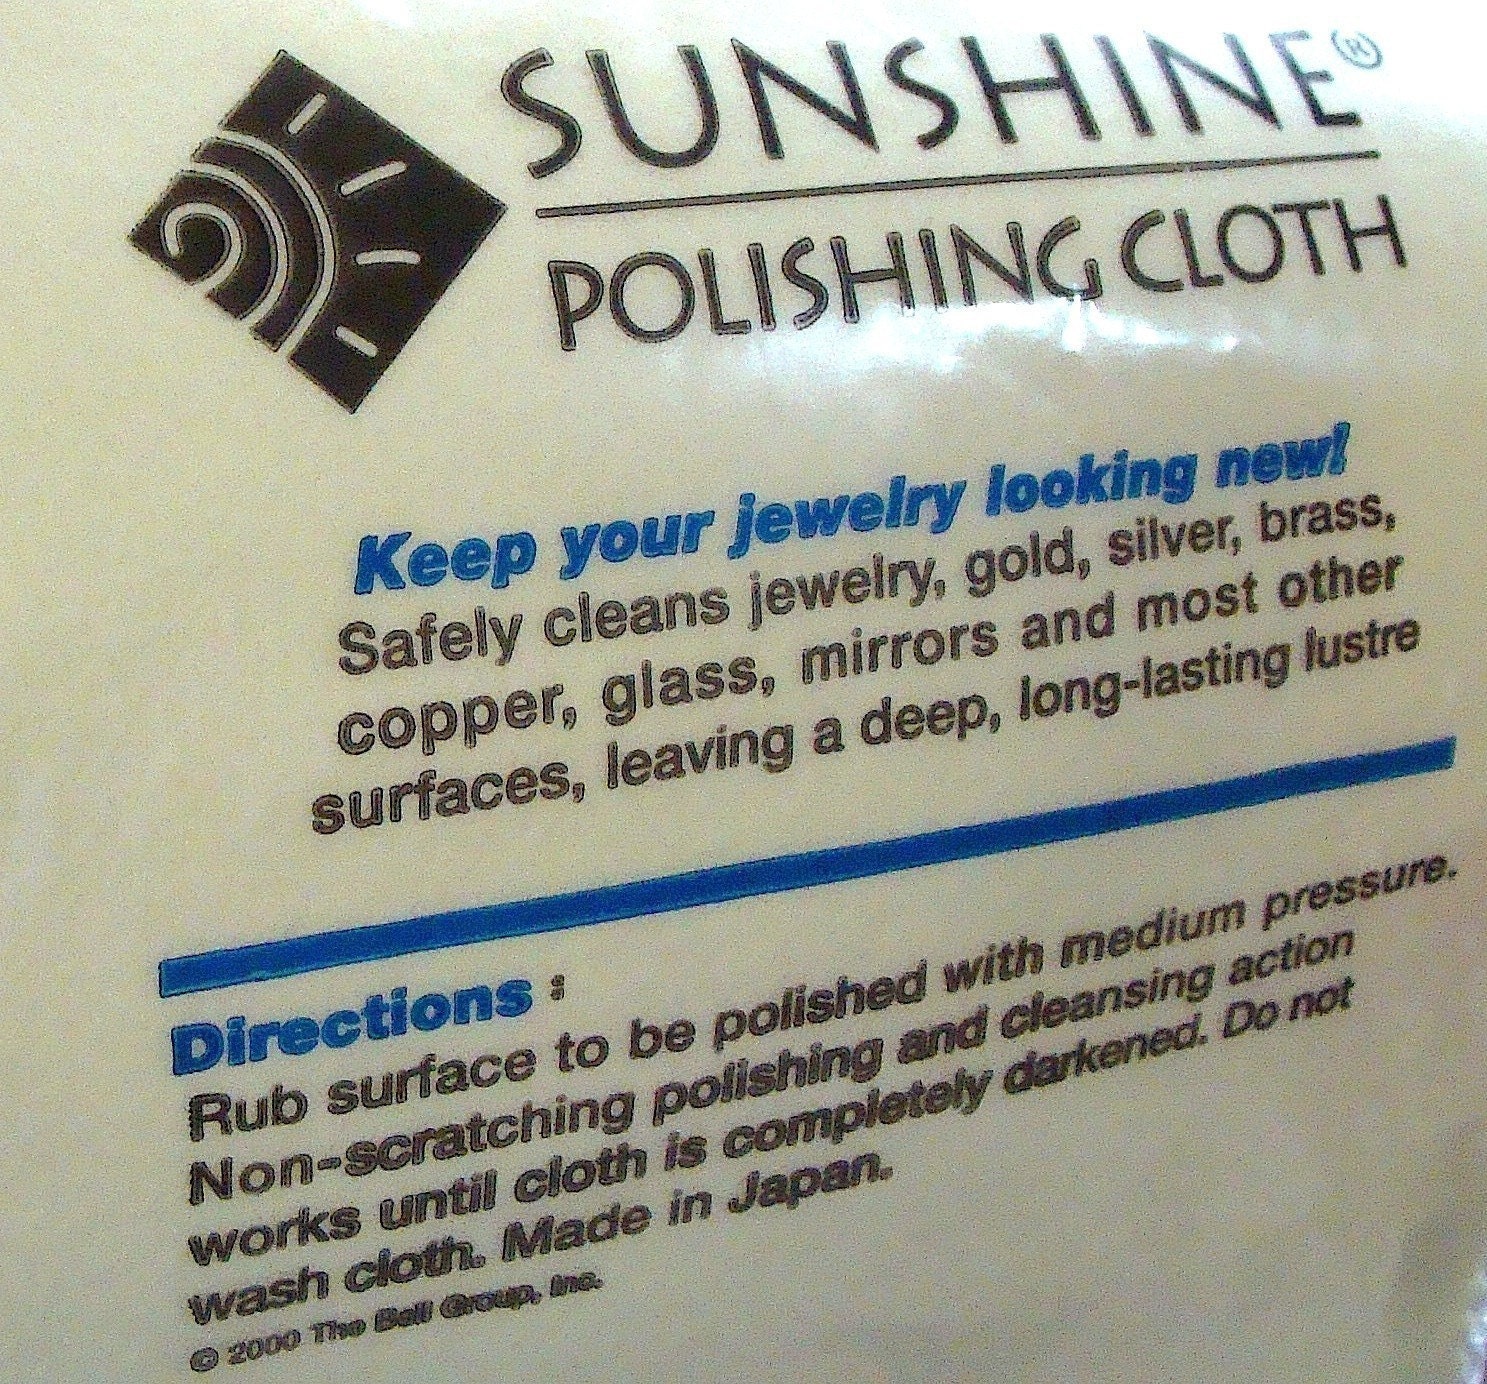 Large Sunshine Polishing Cloth for Jewelry 